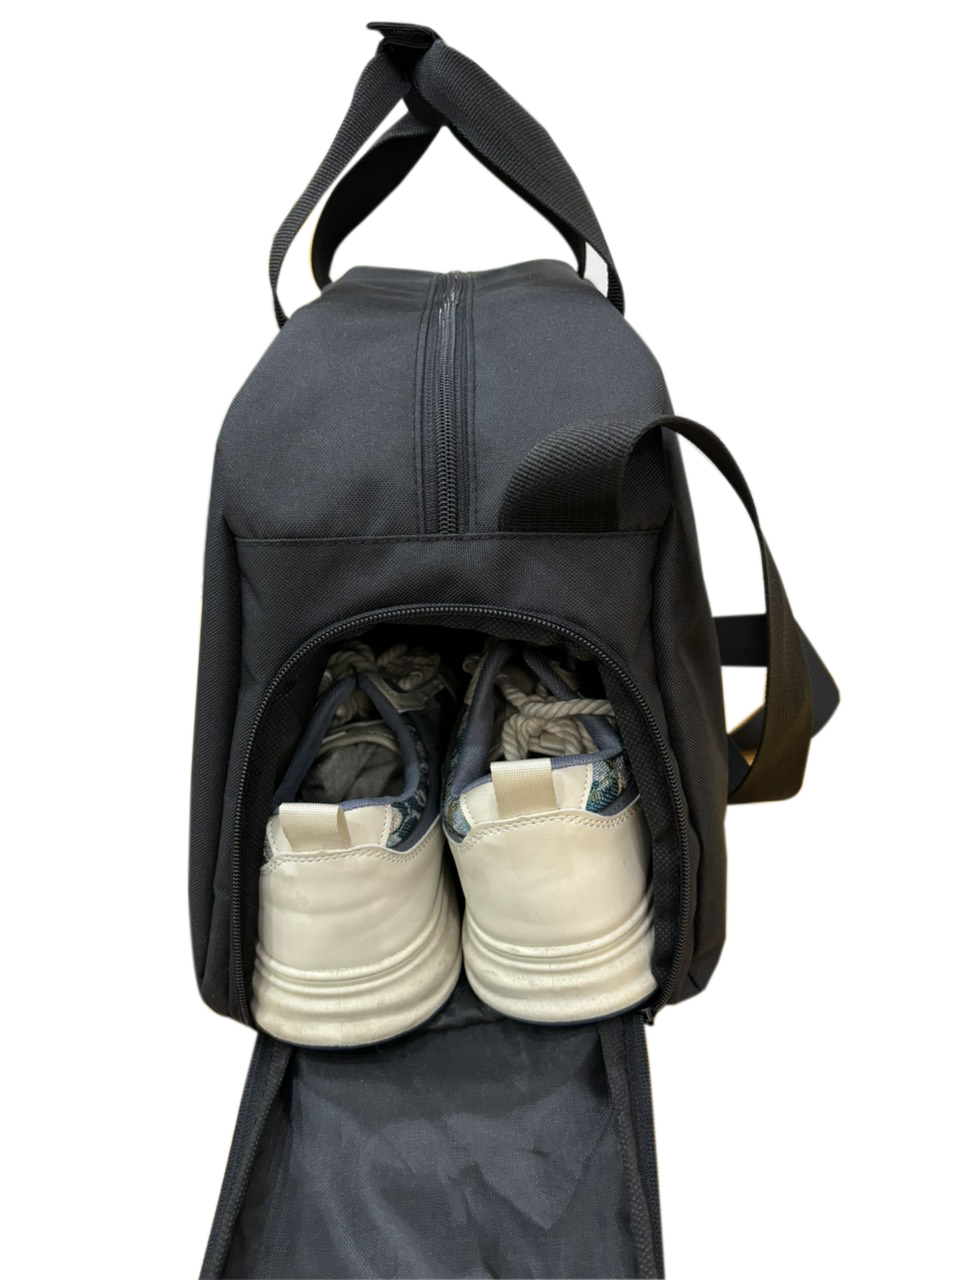 Túi du lịch thể thao TROY Hunter có ngăn đựng giày, chất vải bố pvc chống thấm, size lớn 45cm